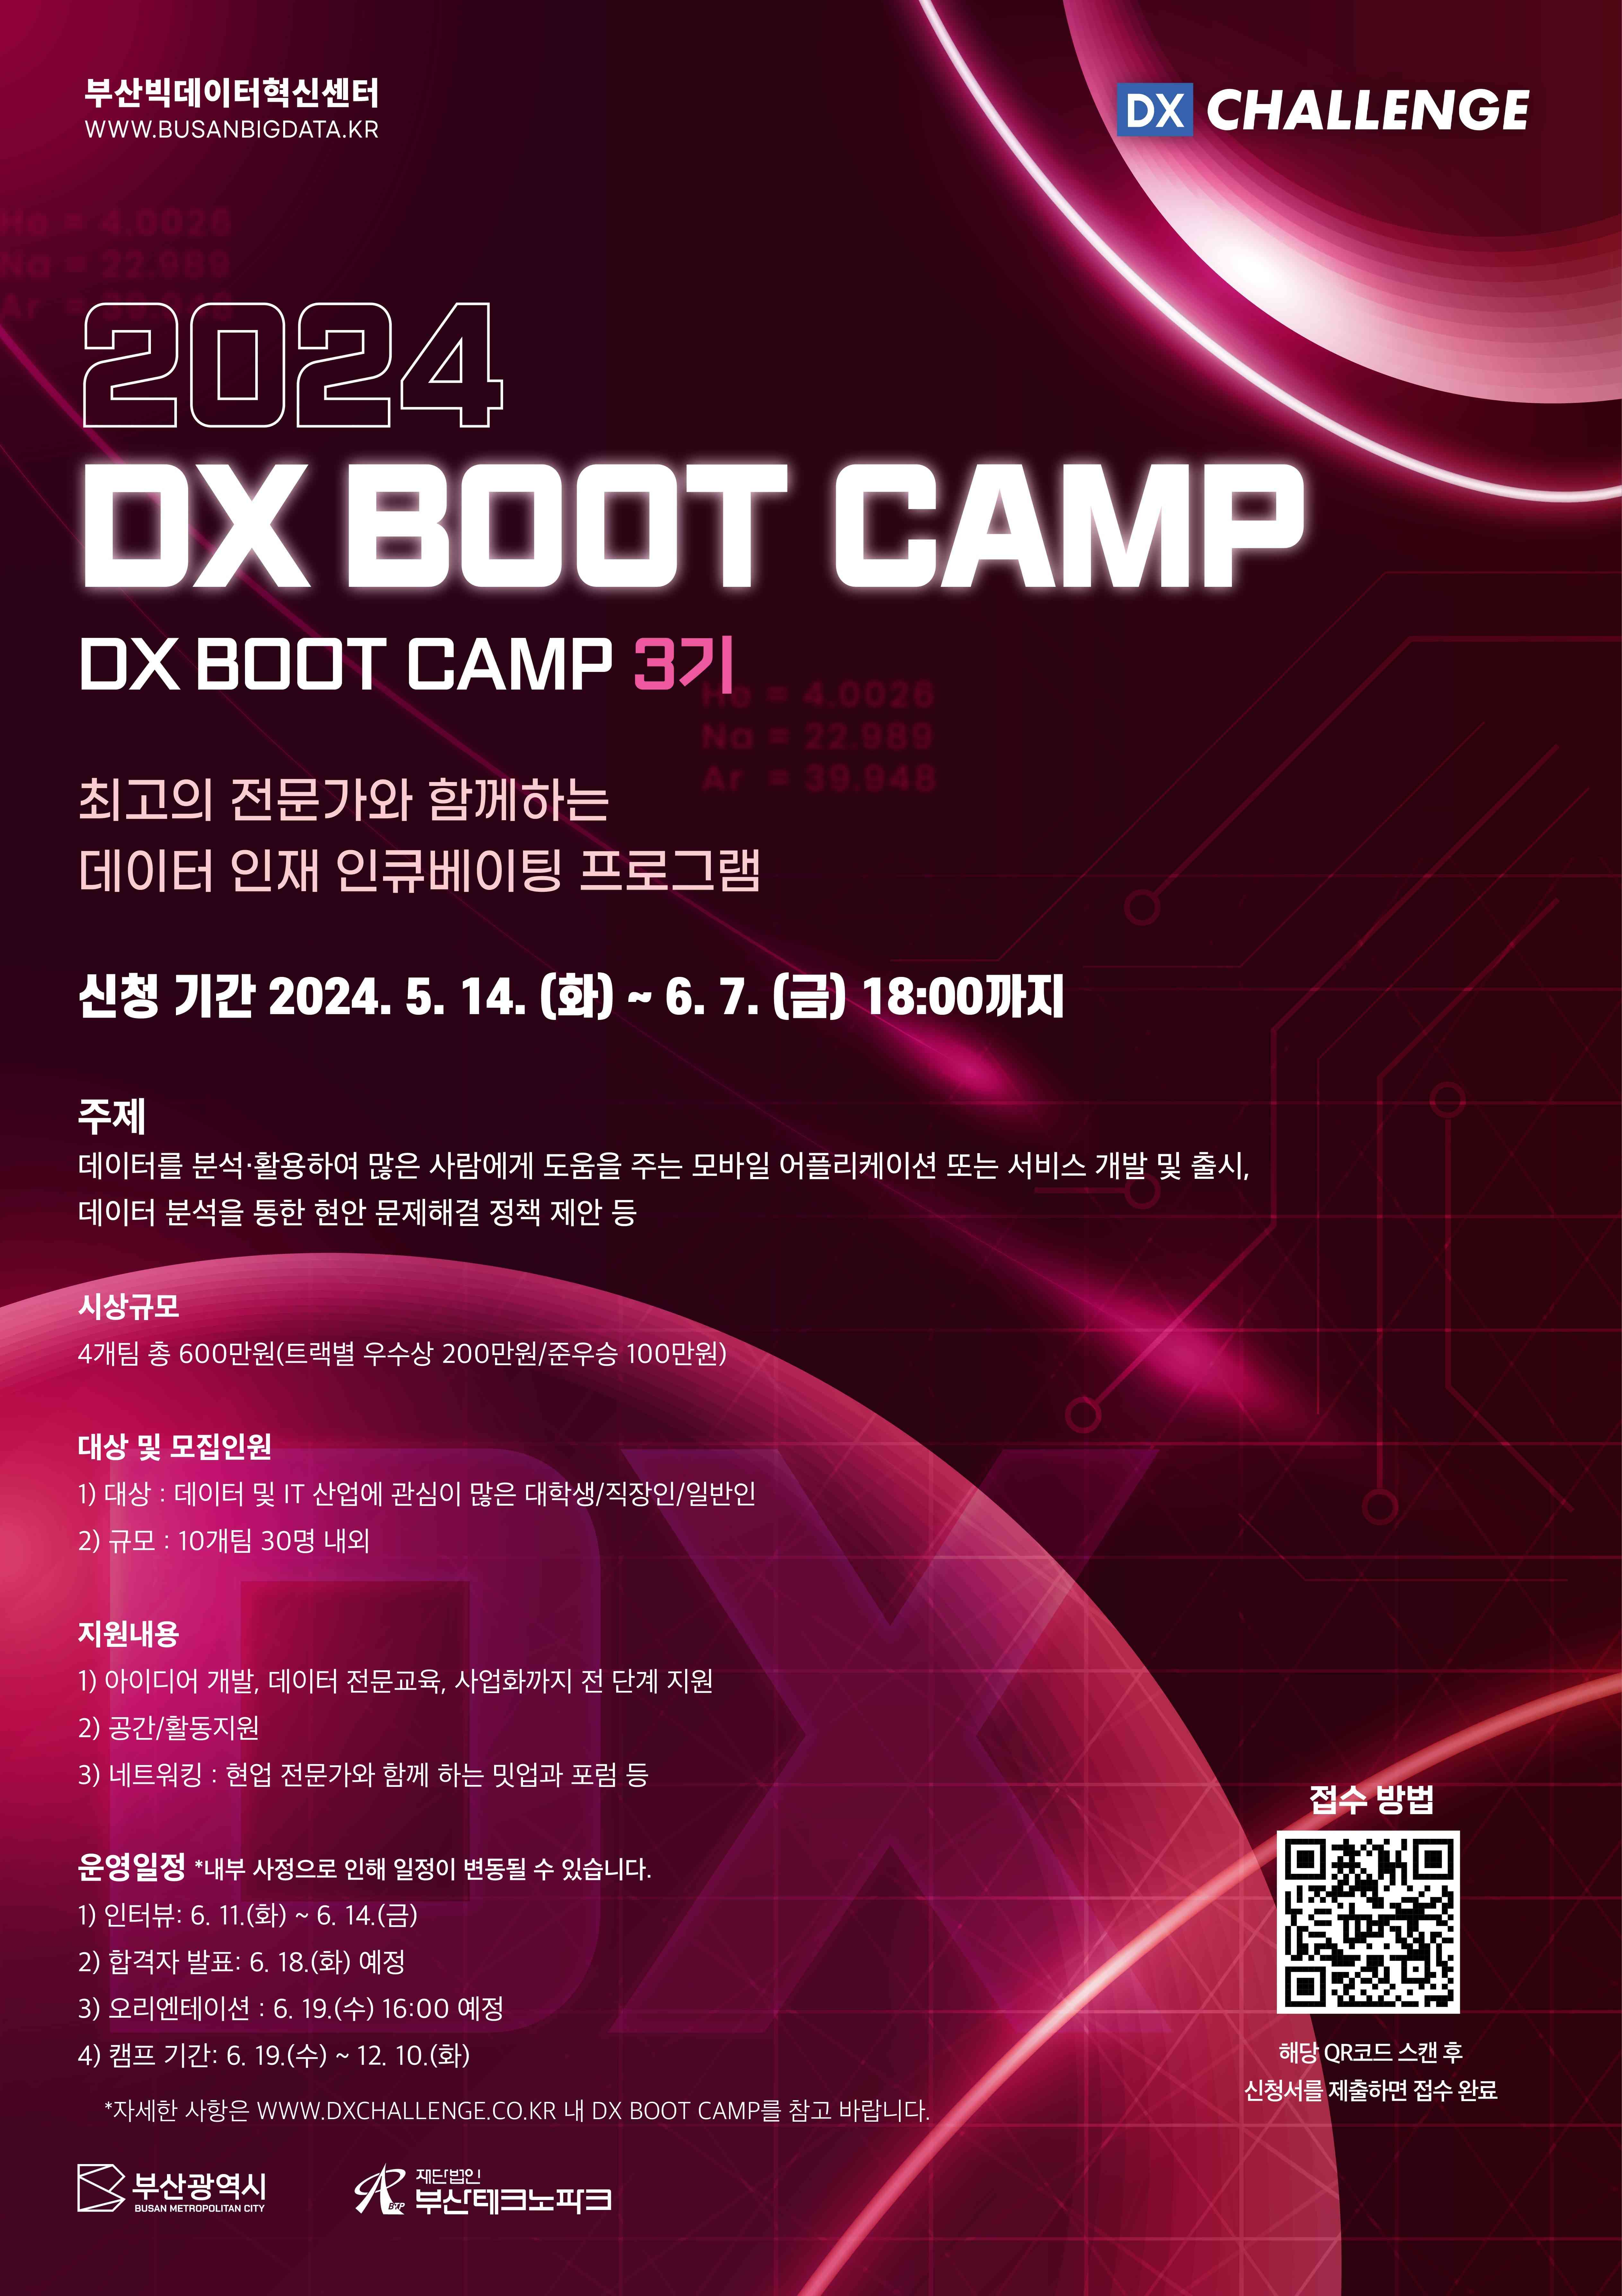 2024 혁신성장 데이터 챌린지 DX BOOT CAMP 참여자 모집